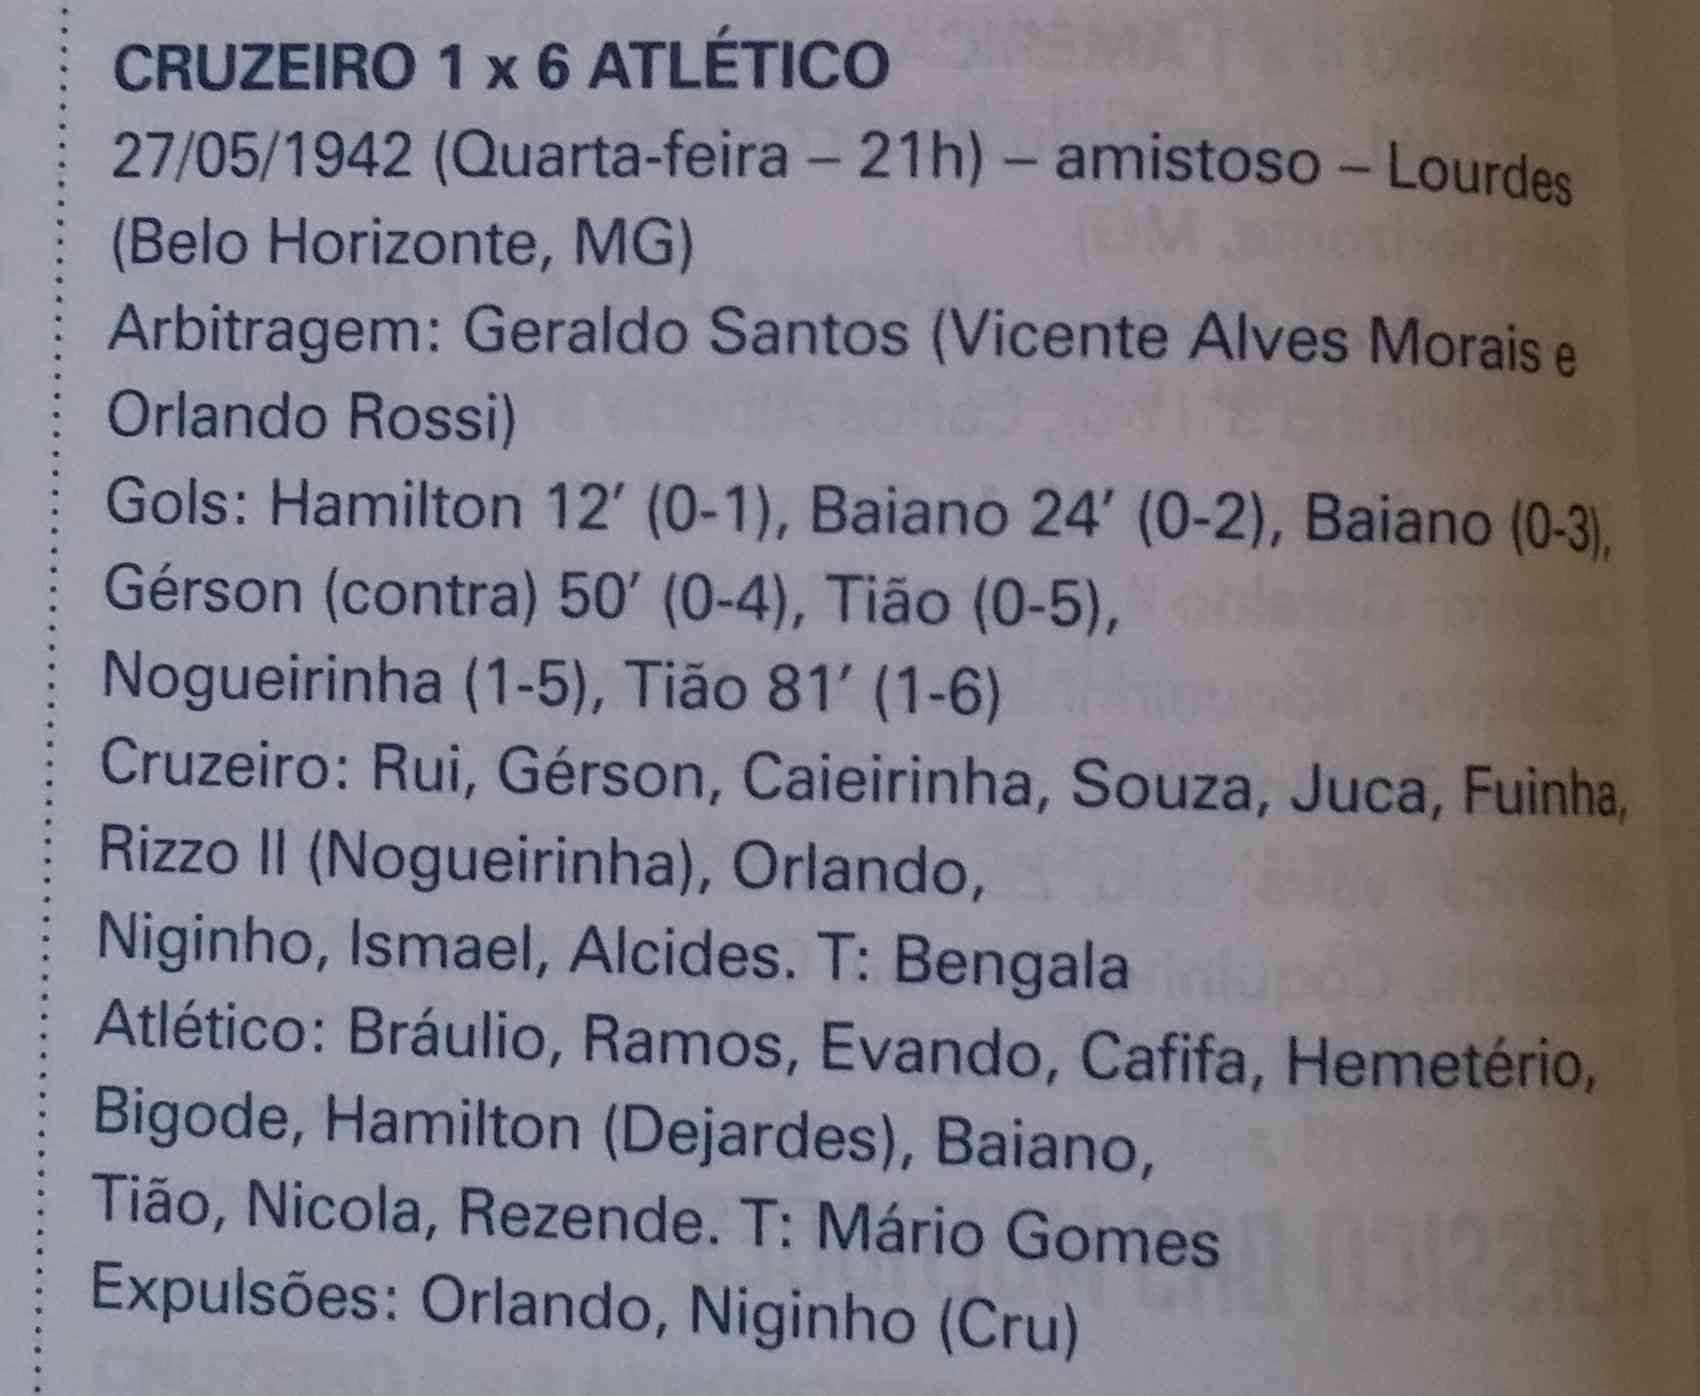 Quantas vezes o Galo ganhou de 6 a 1 do Cruzeiro?